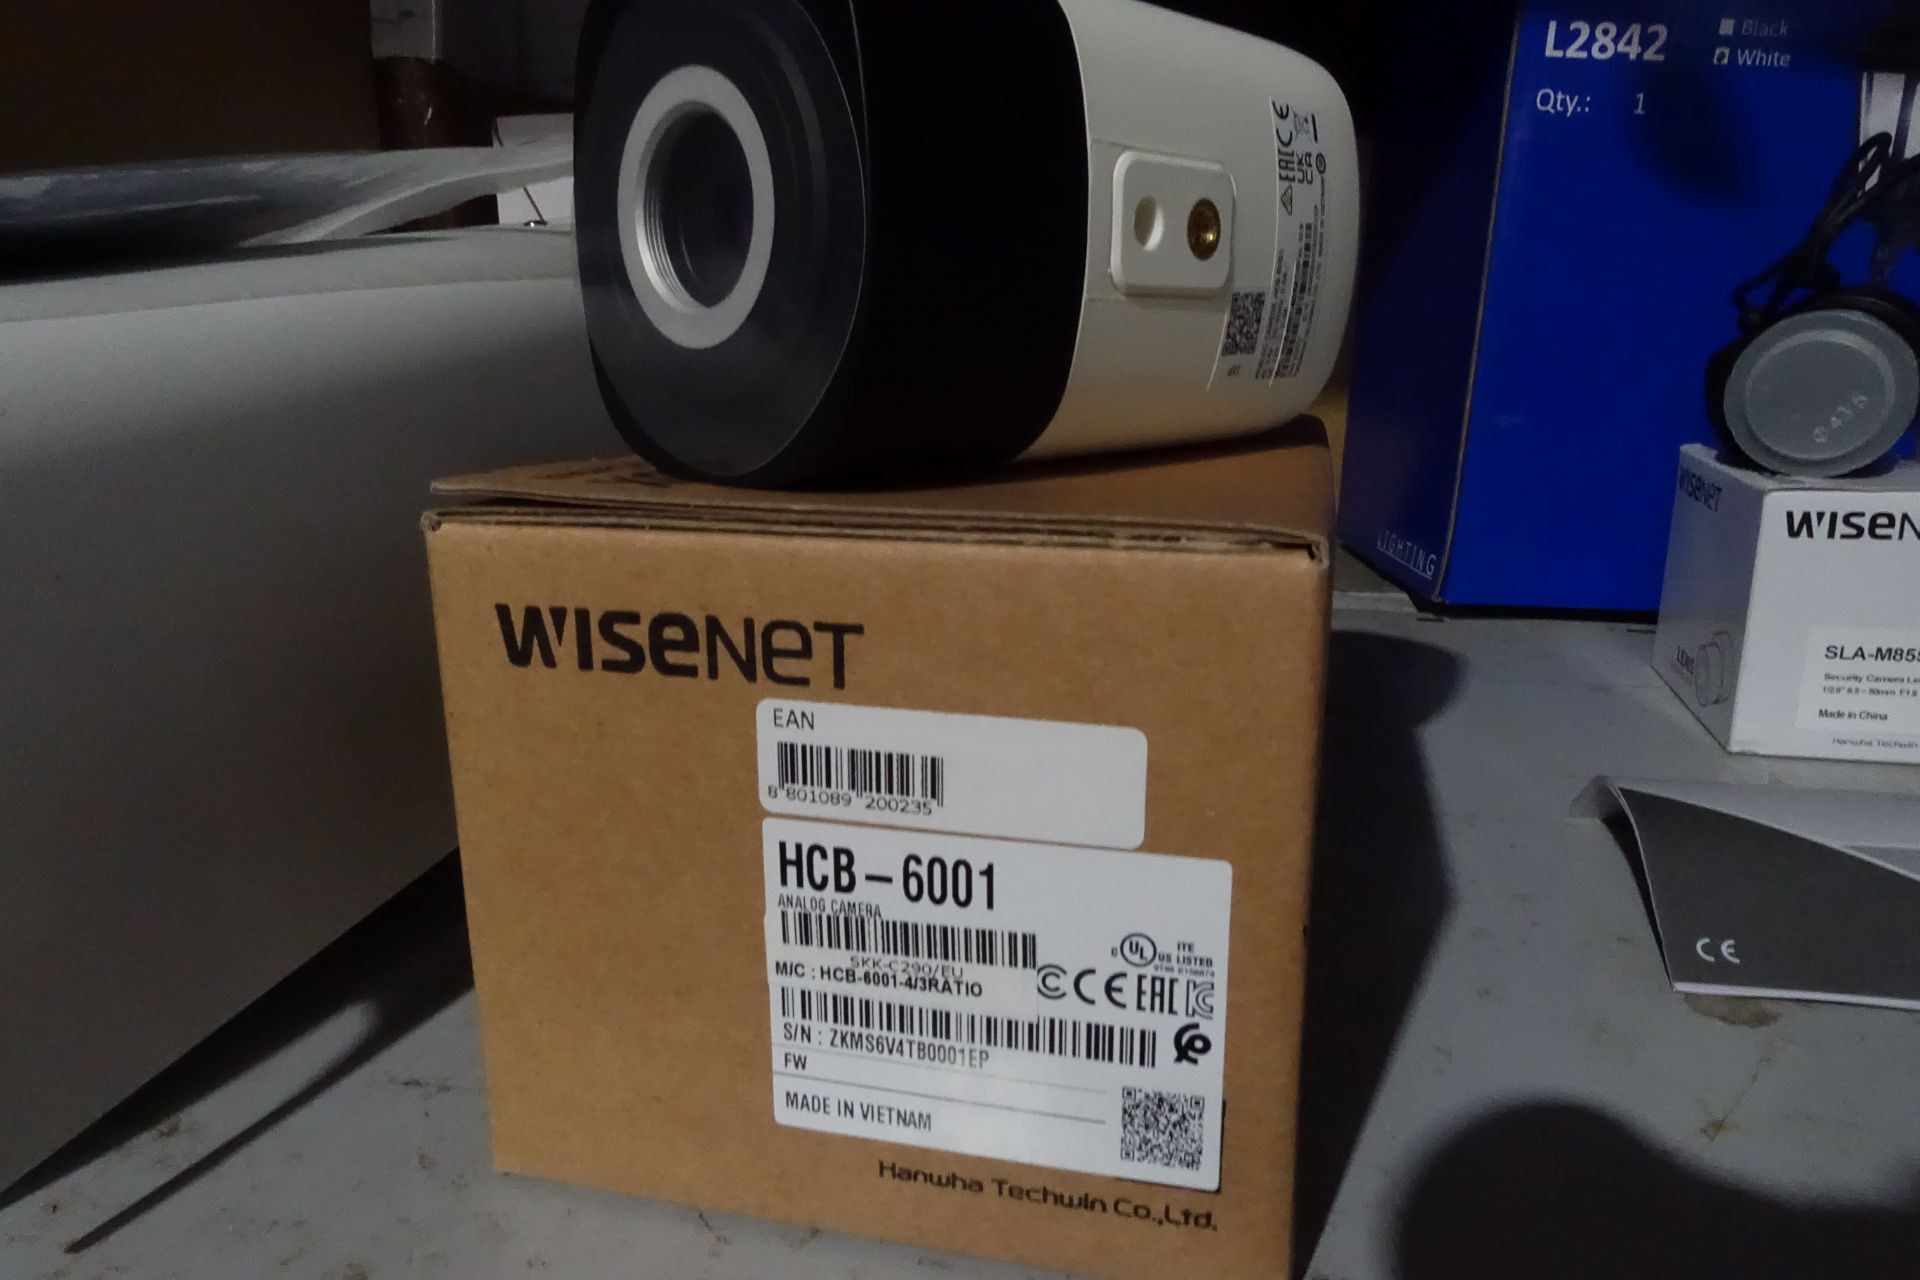 10 x WISENET HCB-6001 Security Camera 1920 x 1080 Pixels Indoor or Outdoor